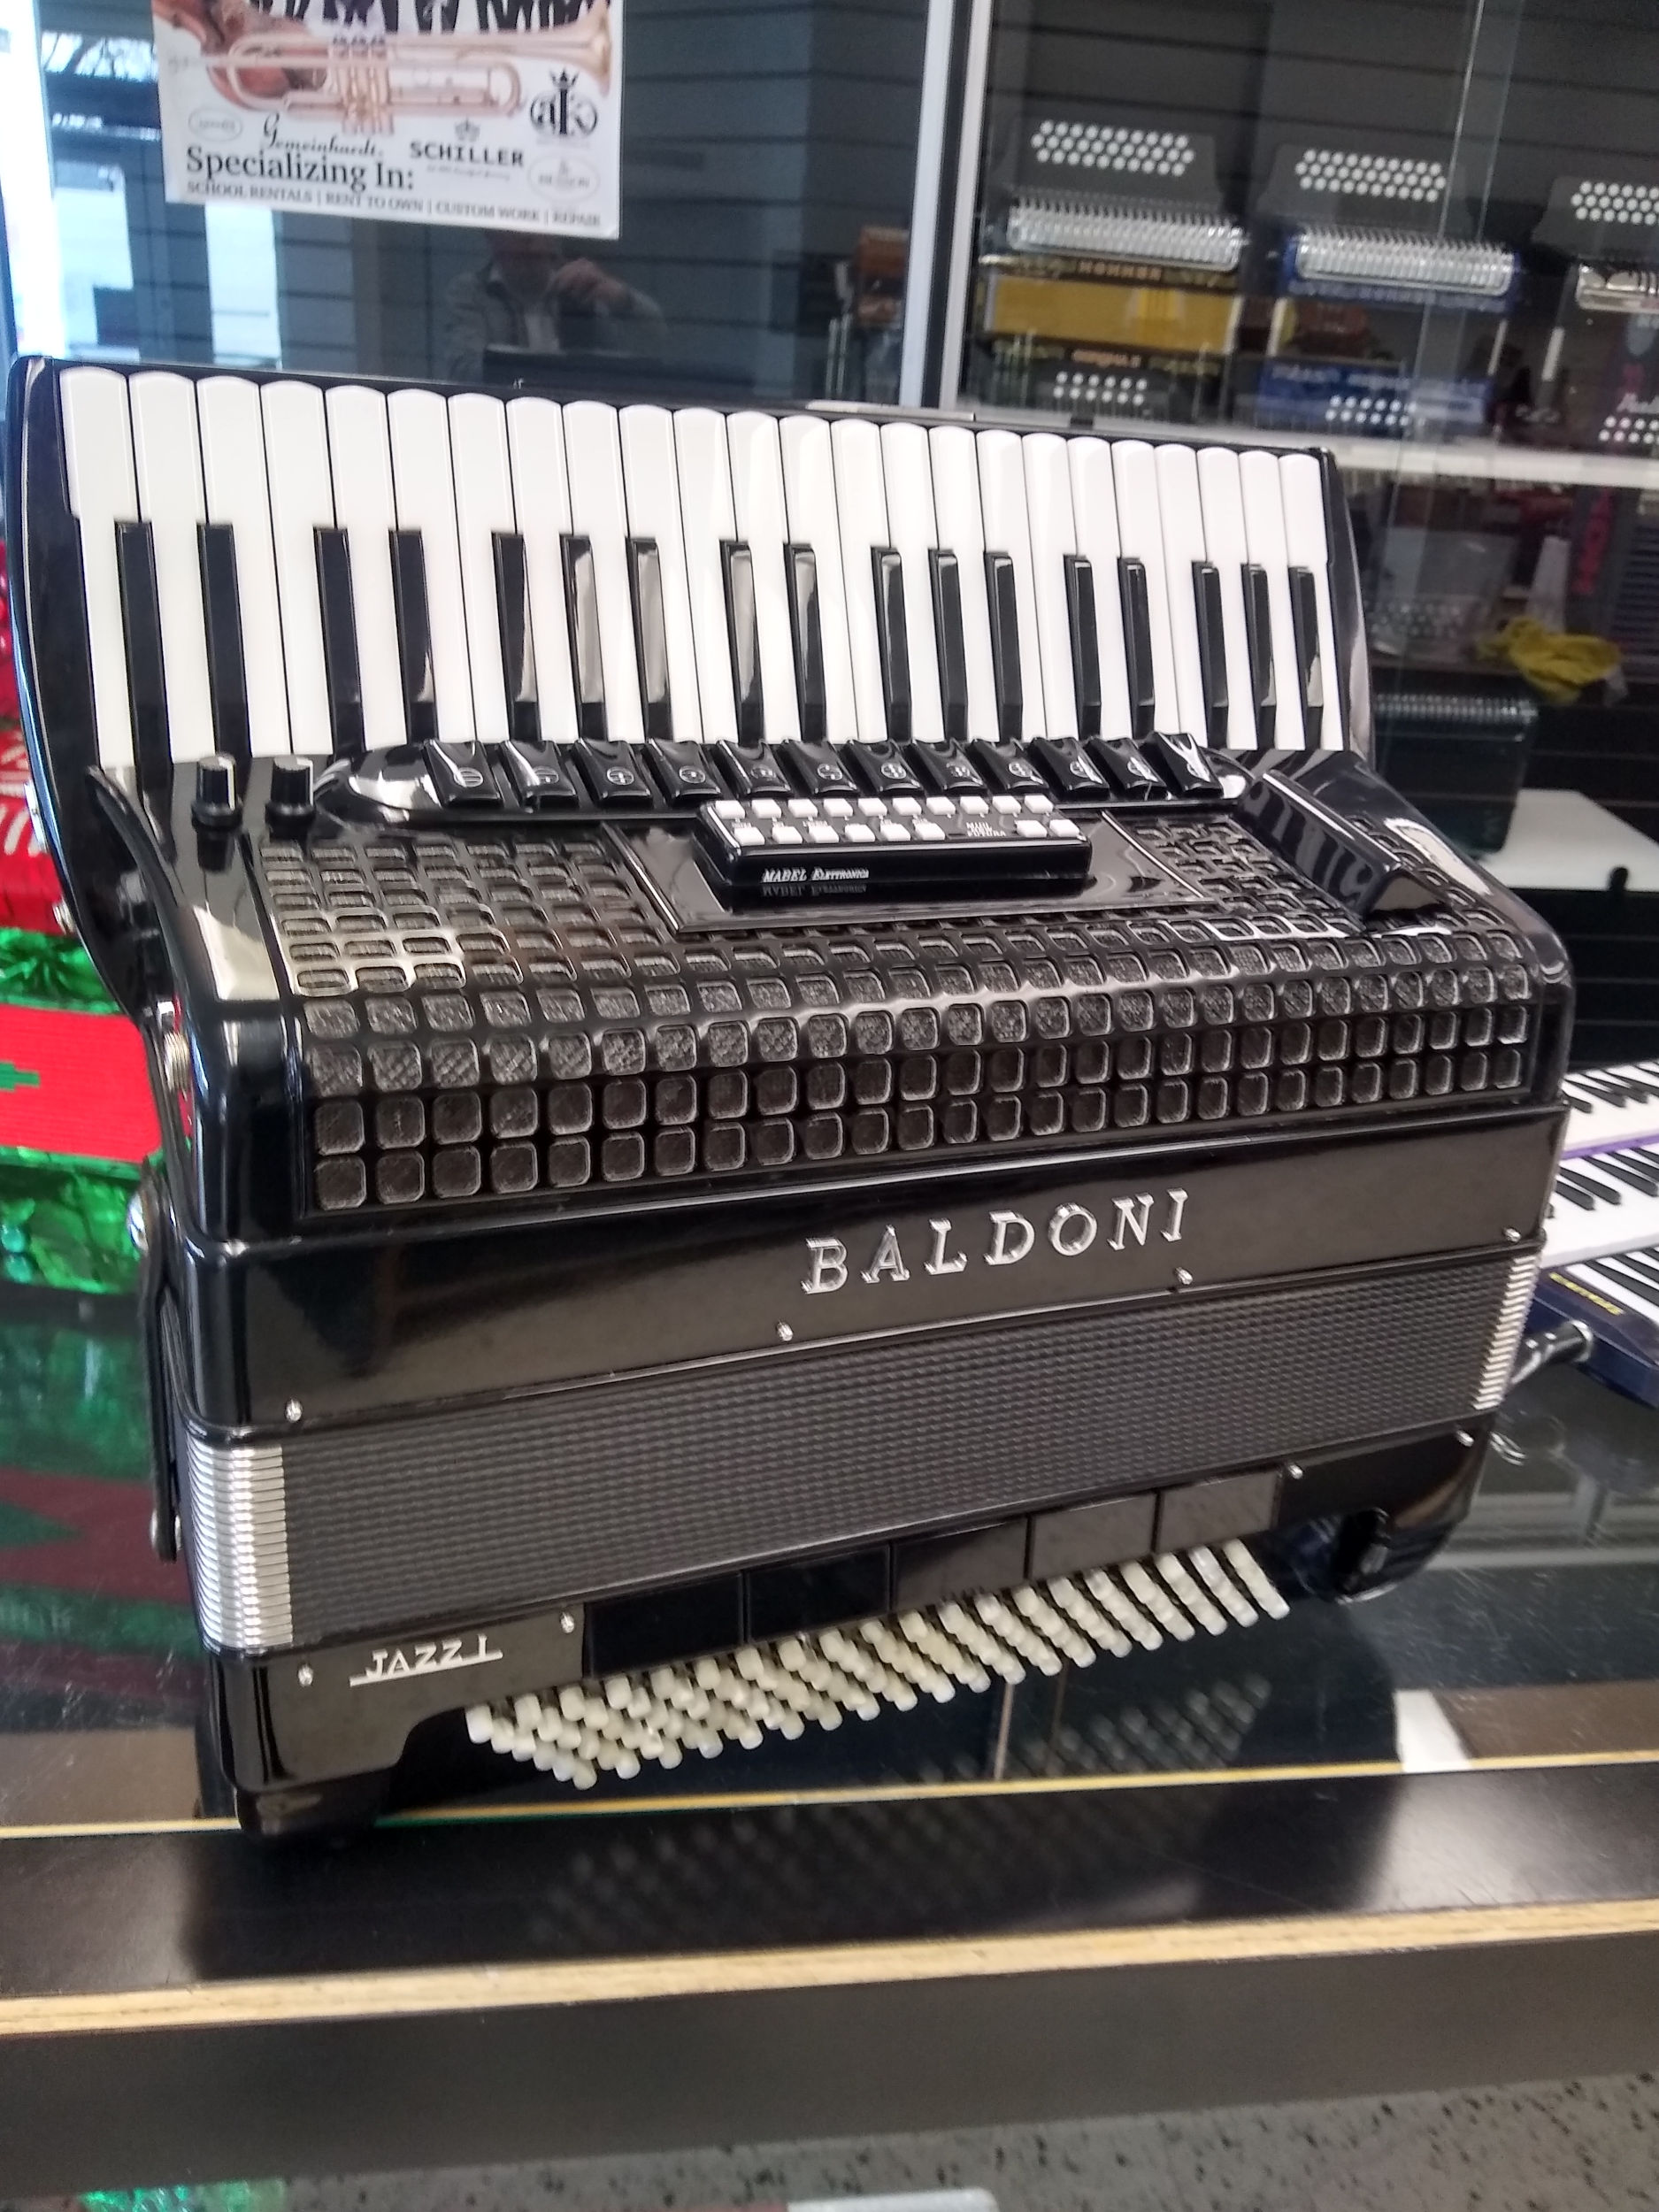 Baldoni Jazz 1 Piano Accordion